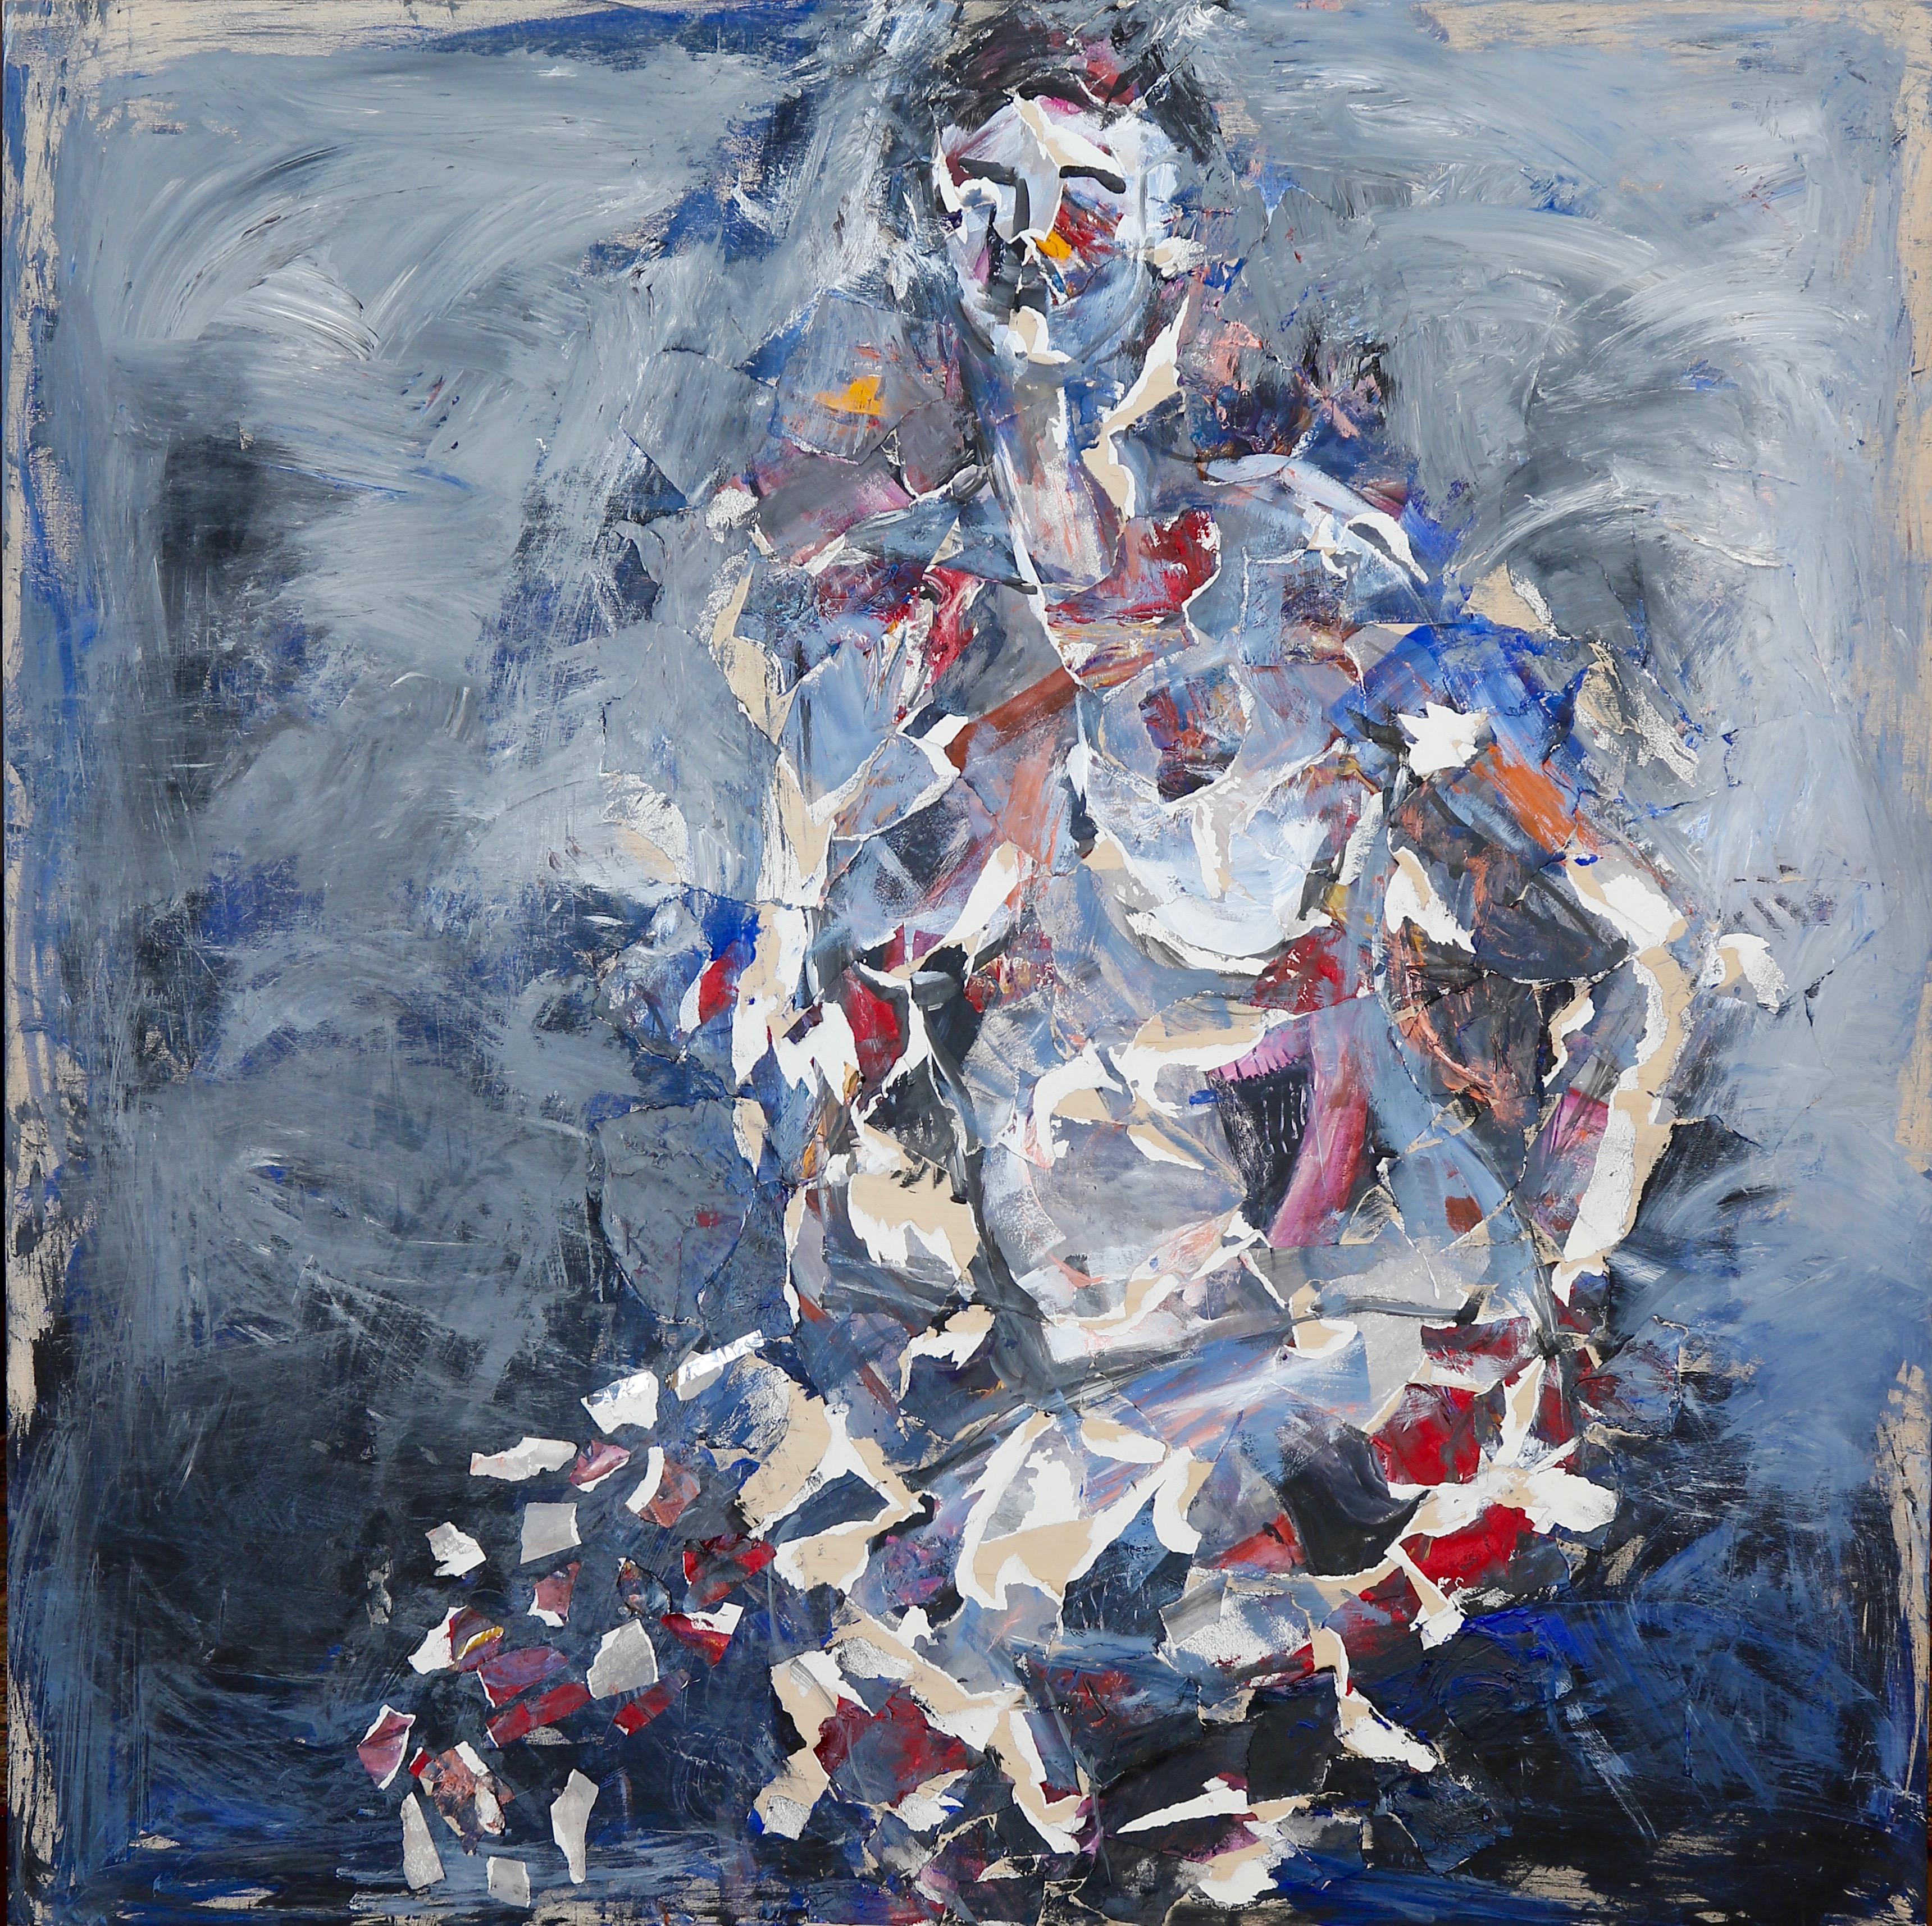 In dem Gemälde "Femme 3" wendet der Künstler Techniken an, die an die frühe Abstraktion erinnern, um die Figur einer Frau darzustellen. Durch die meisterhafte Verwendung von Blau-, Weiß- und Rottönen, die mit kühnen und gestischen Pinselstrichen